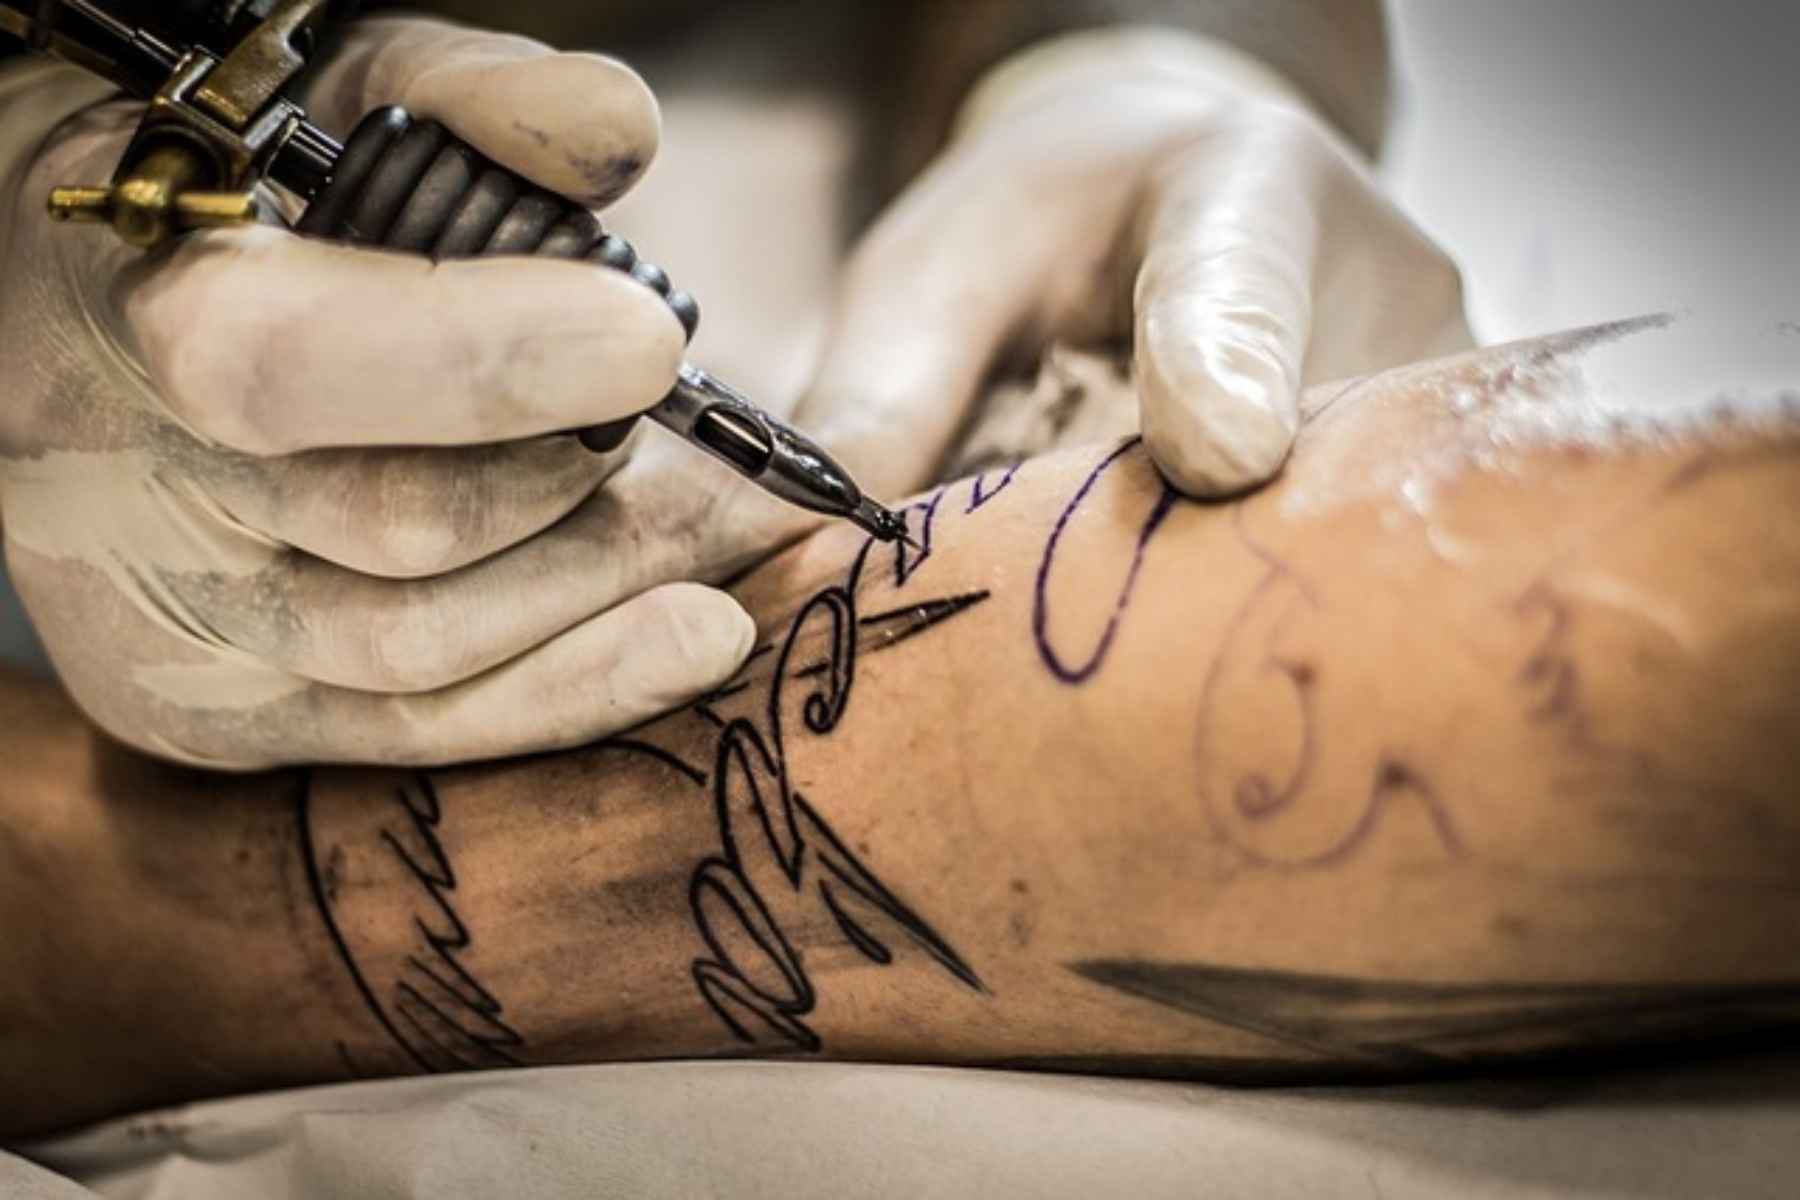 Πώς γίνεται η αφαίρεση τατουάζ με ασφάλεια;